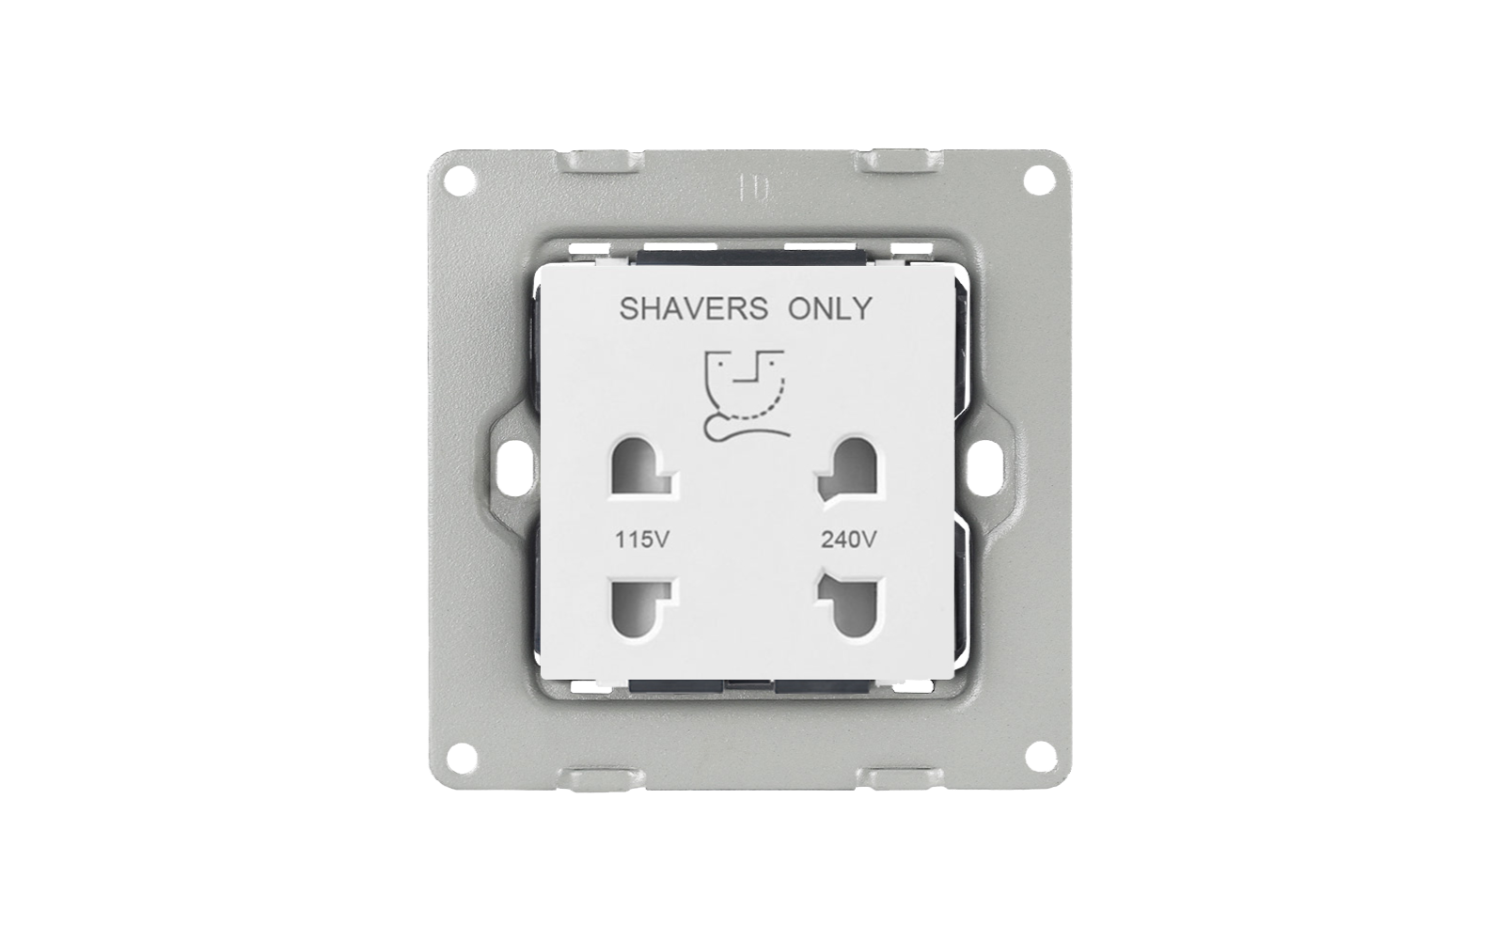 Shaver Socket - White